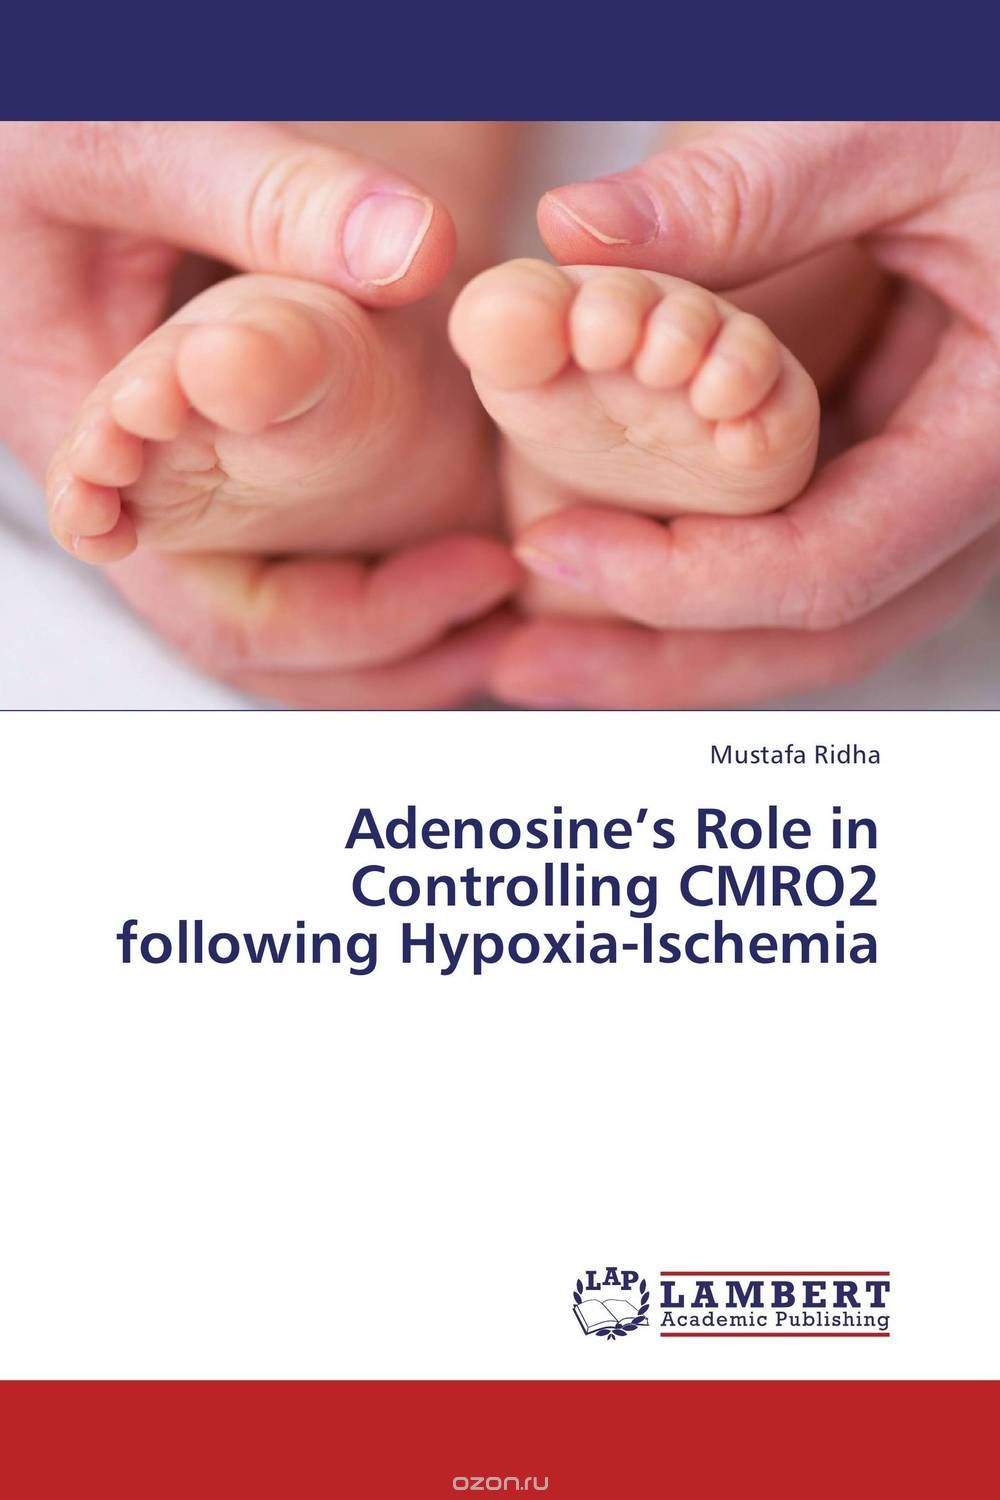 Скачать книгу "Adenosine’s Role in Controlling CMRO2 following Hypoxia-Ischemia"